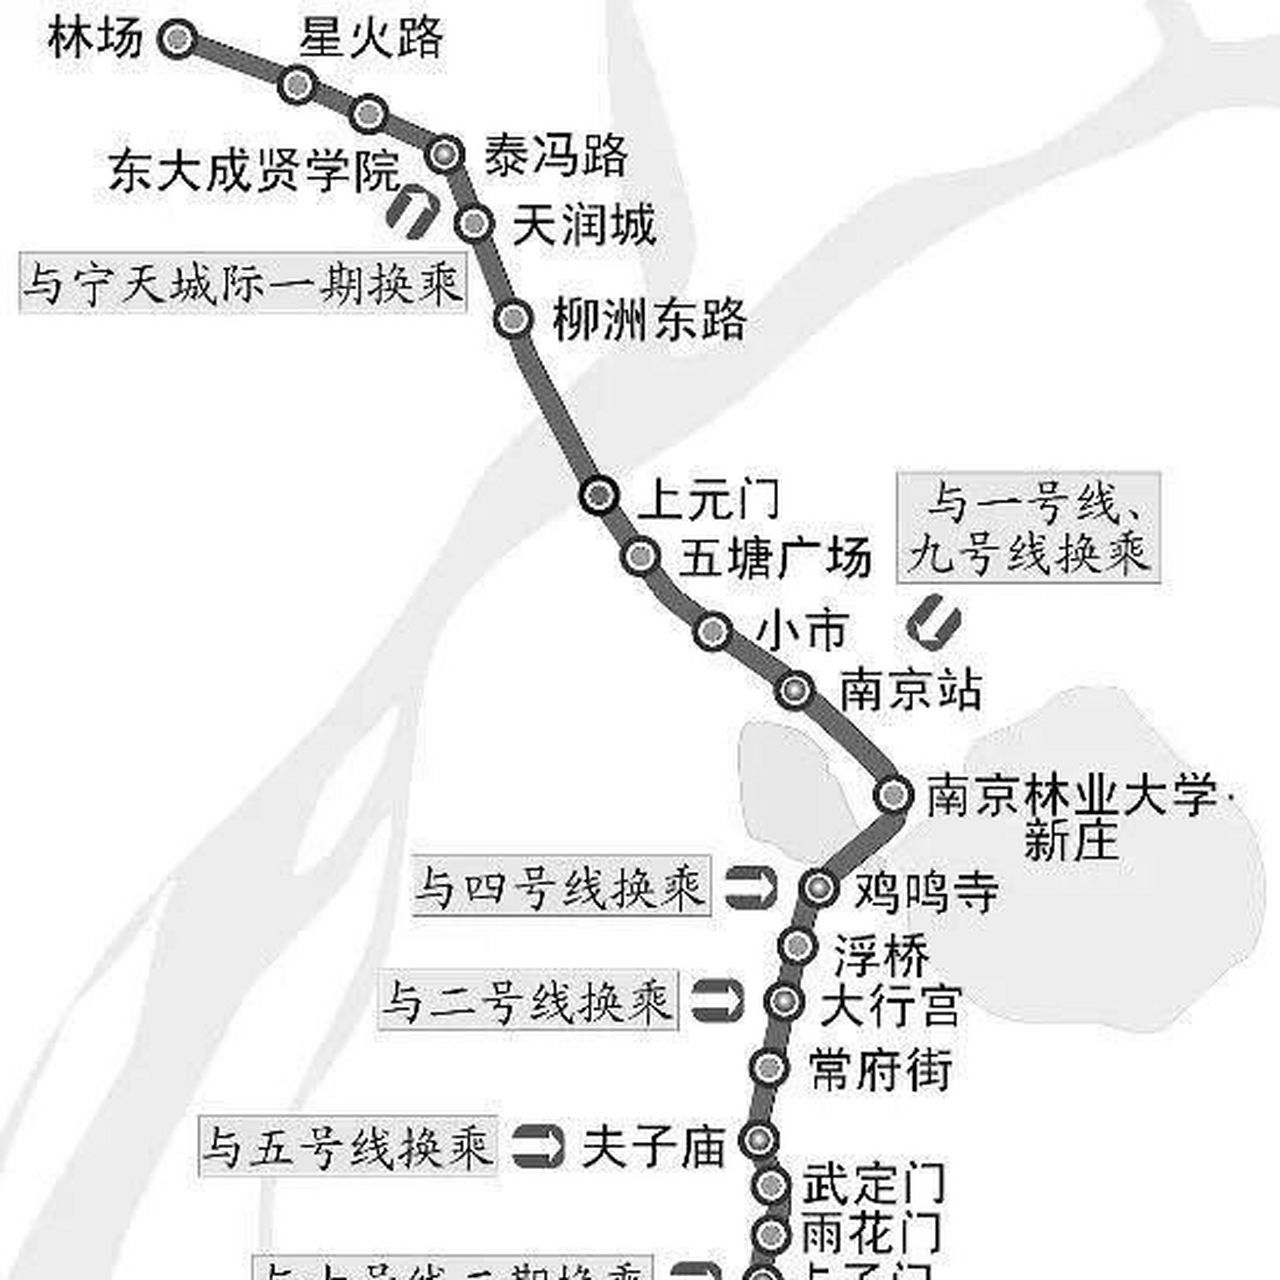 3号地铁线延长线路图图片